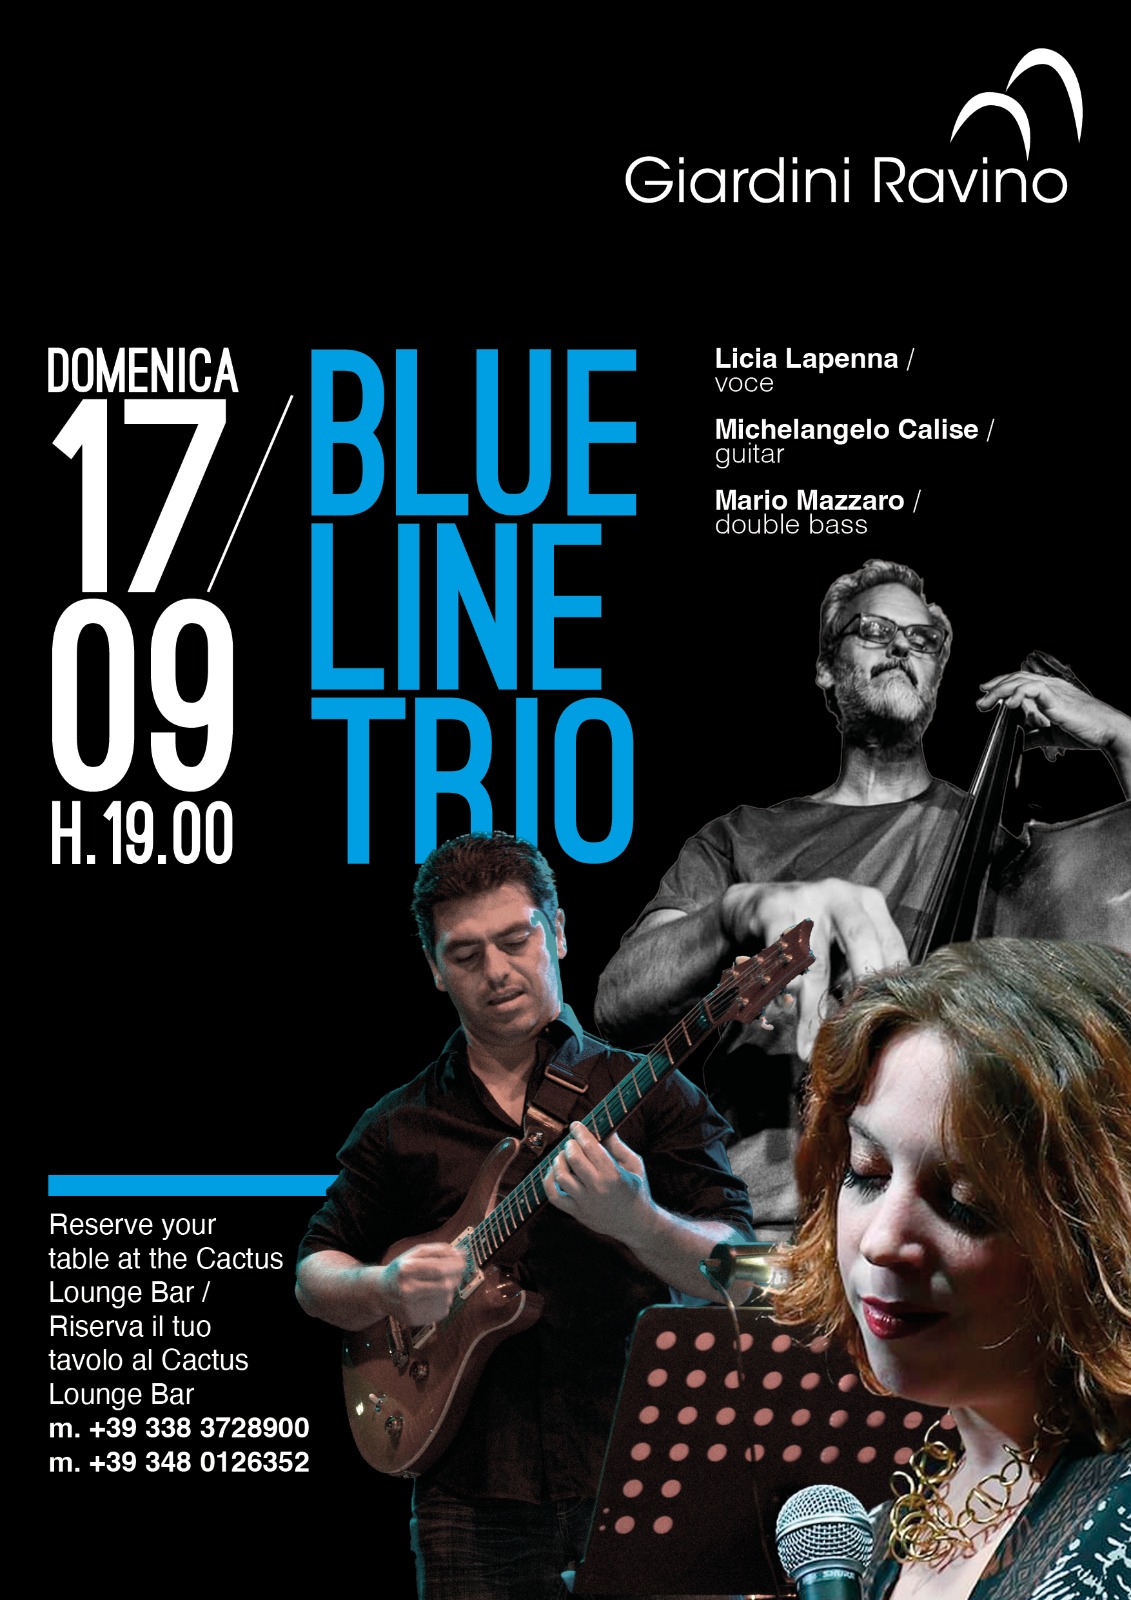 Blue Line trio